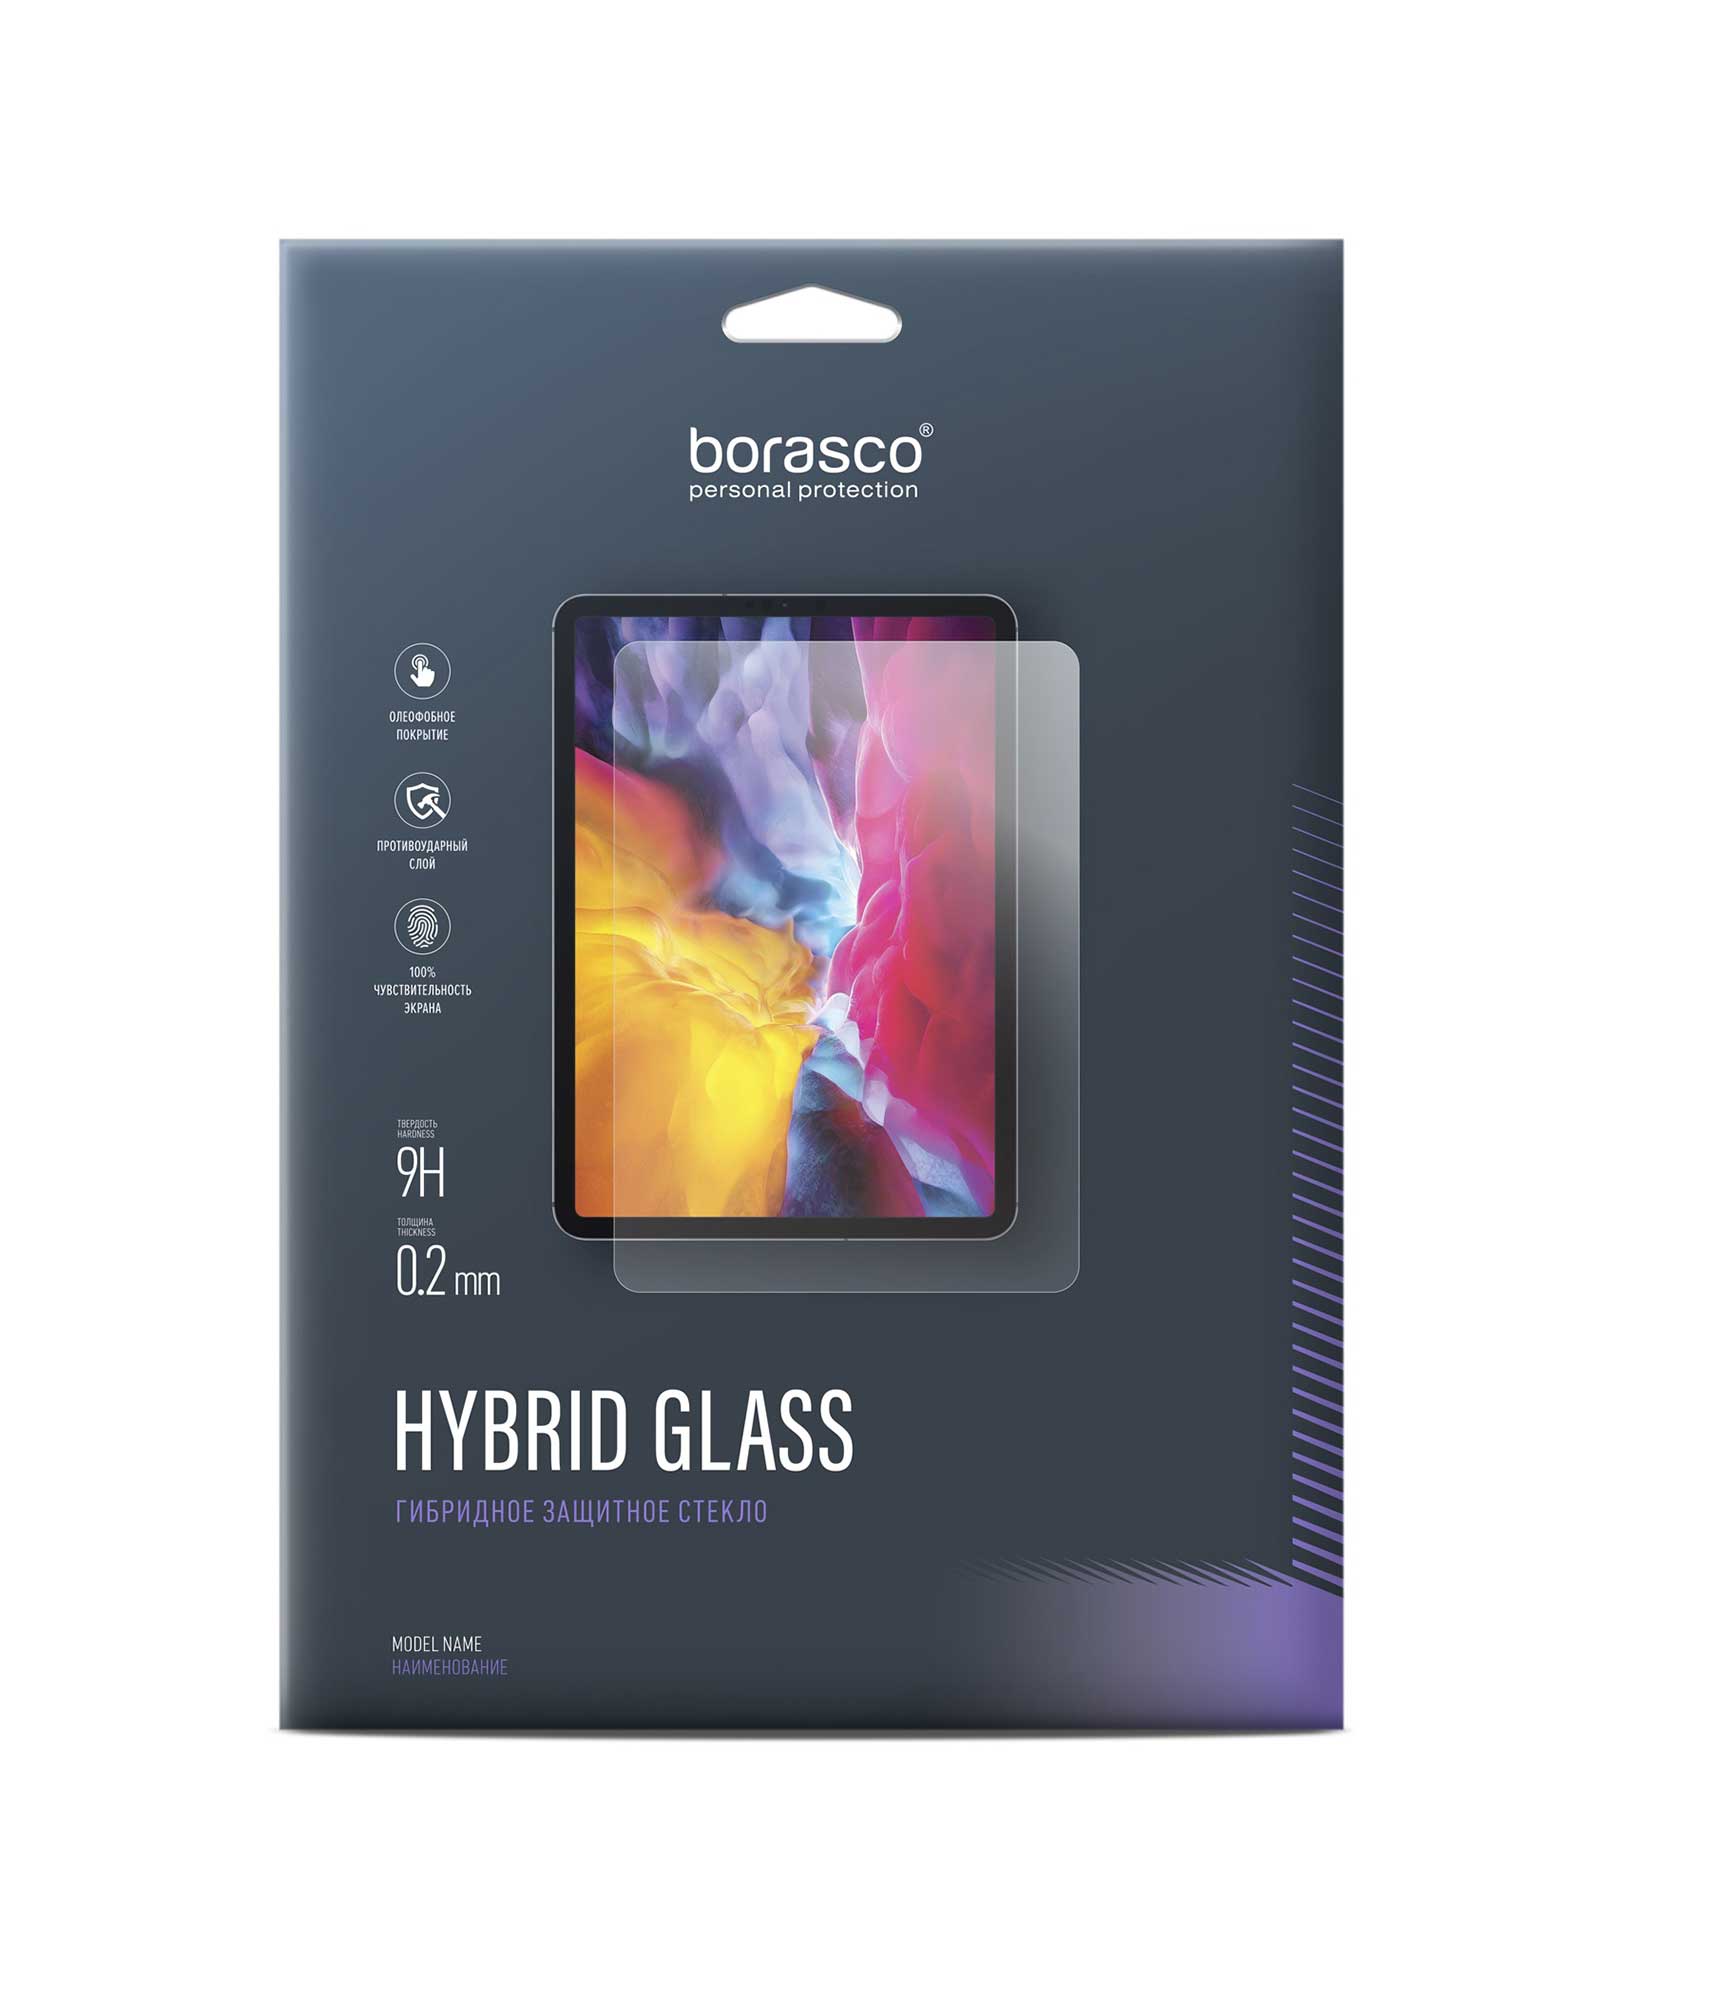 Защитное стекло BoraSCO Hybrid Glass для Huawei MediaPad T3 10 защитное стекло для планшета huawei mediapad t5 10 10 1 дюйма t3 m5 m6 t10 t8 2 шт